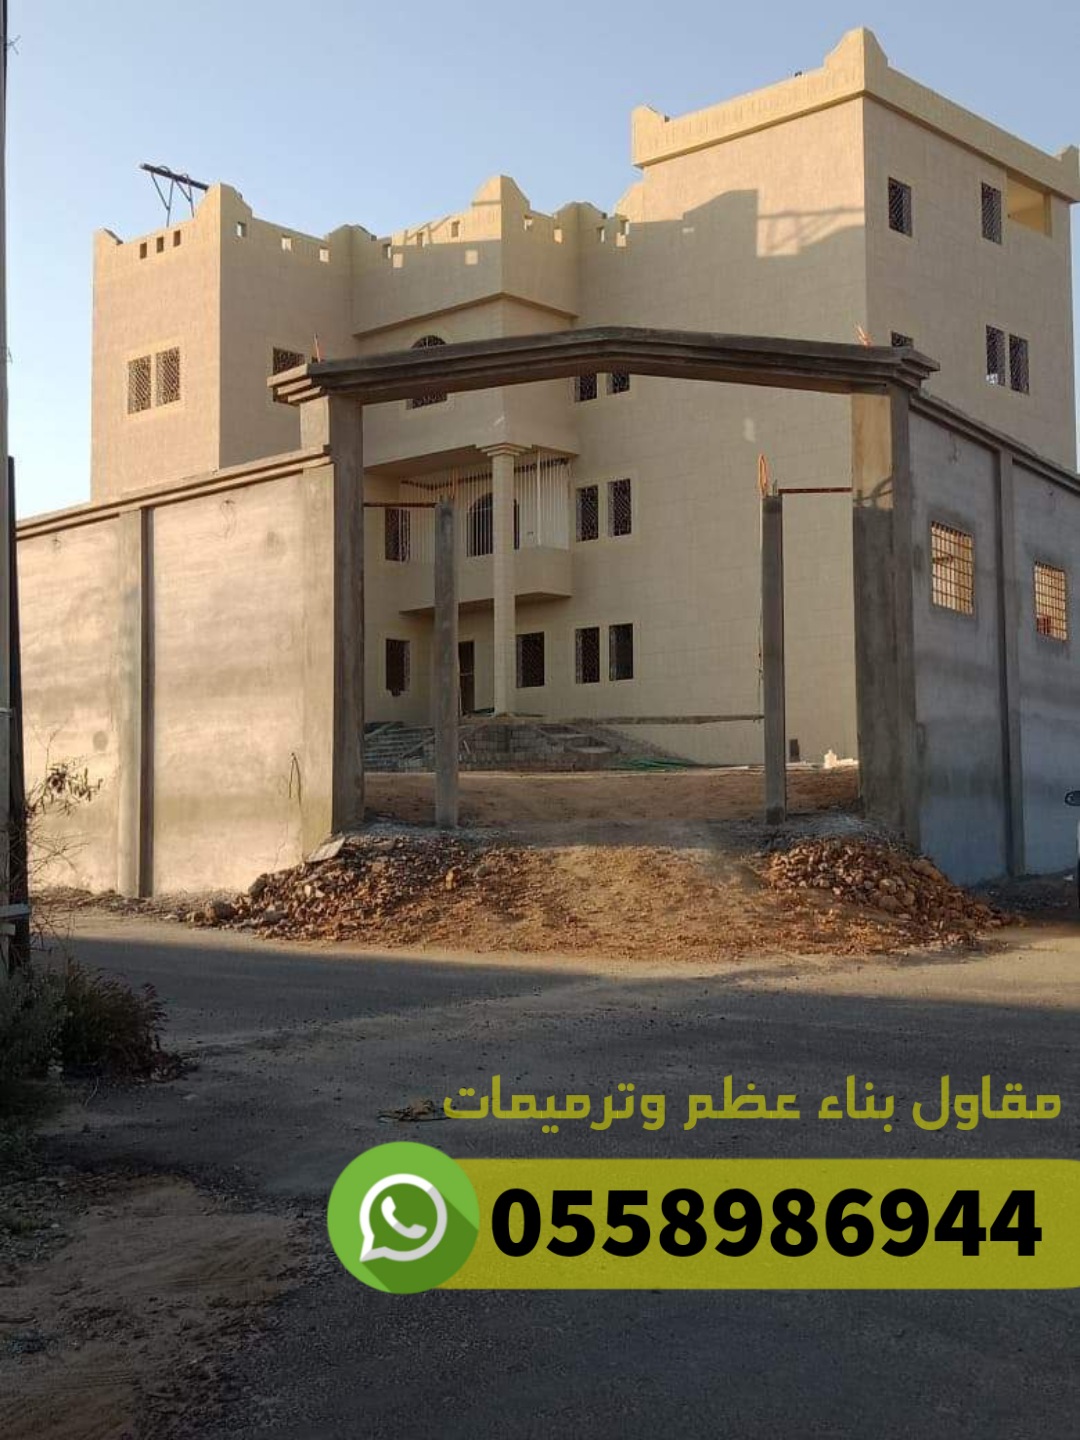 مقاول كنبليت وعظم مباني ومصنعية في جدة, 0558986944 P_2520tajw66